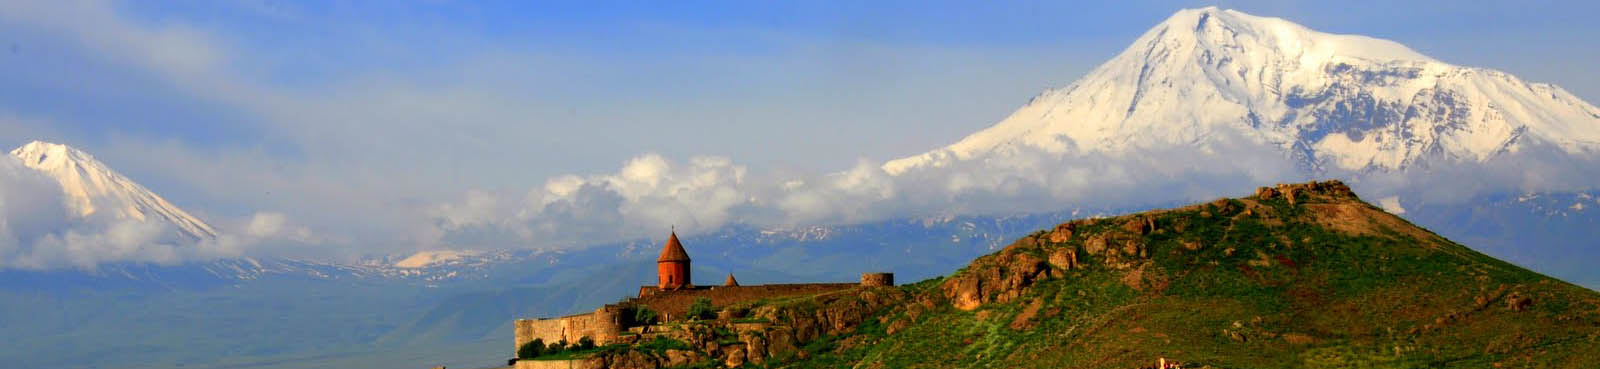 Armenien Ararat mit Khor Virap